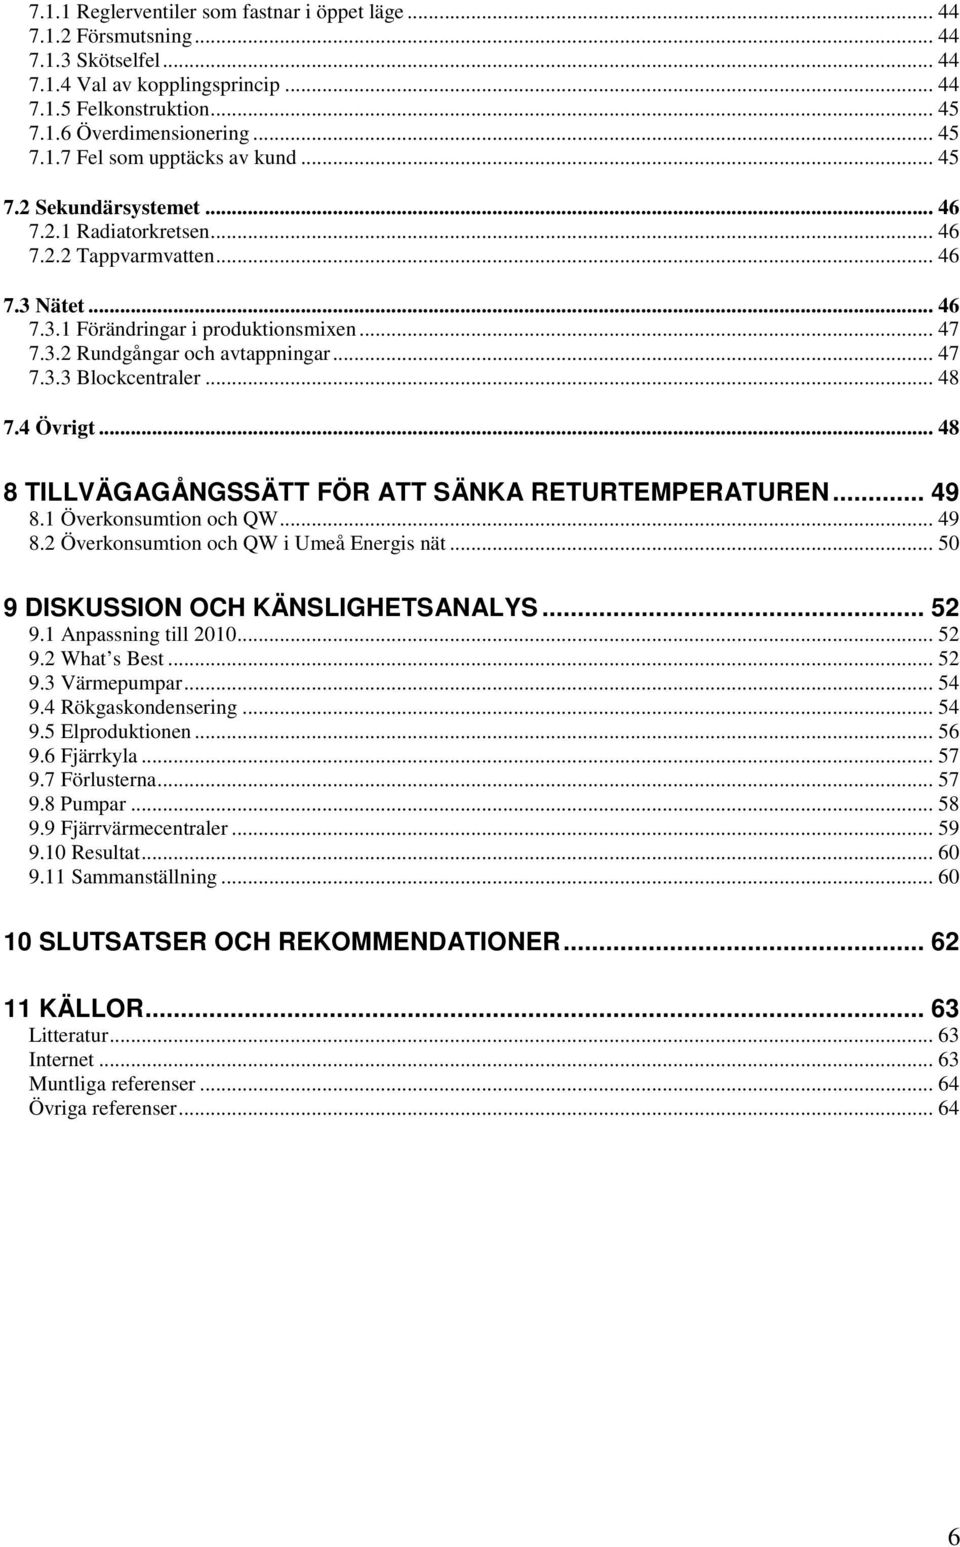 .. 48 7.4 Övrigt... 48 8 TILLVÄGAGÅNGSSÄTT FÖR ATT SÄNKA RETURTEMPERATUREN... 49 8.1 Överkonsumtion och QW... 49 8.2 Överkonsumtion och QW i Umeå Energis nät... 50 9 DISKUSSION OCH KÄNSLIGHETSANALYS.